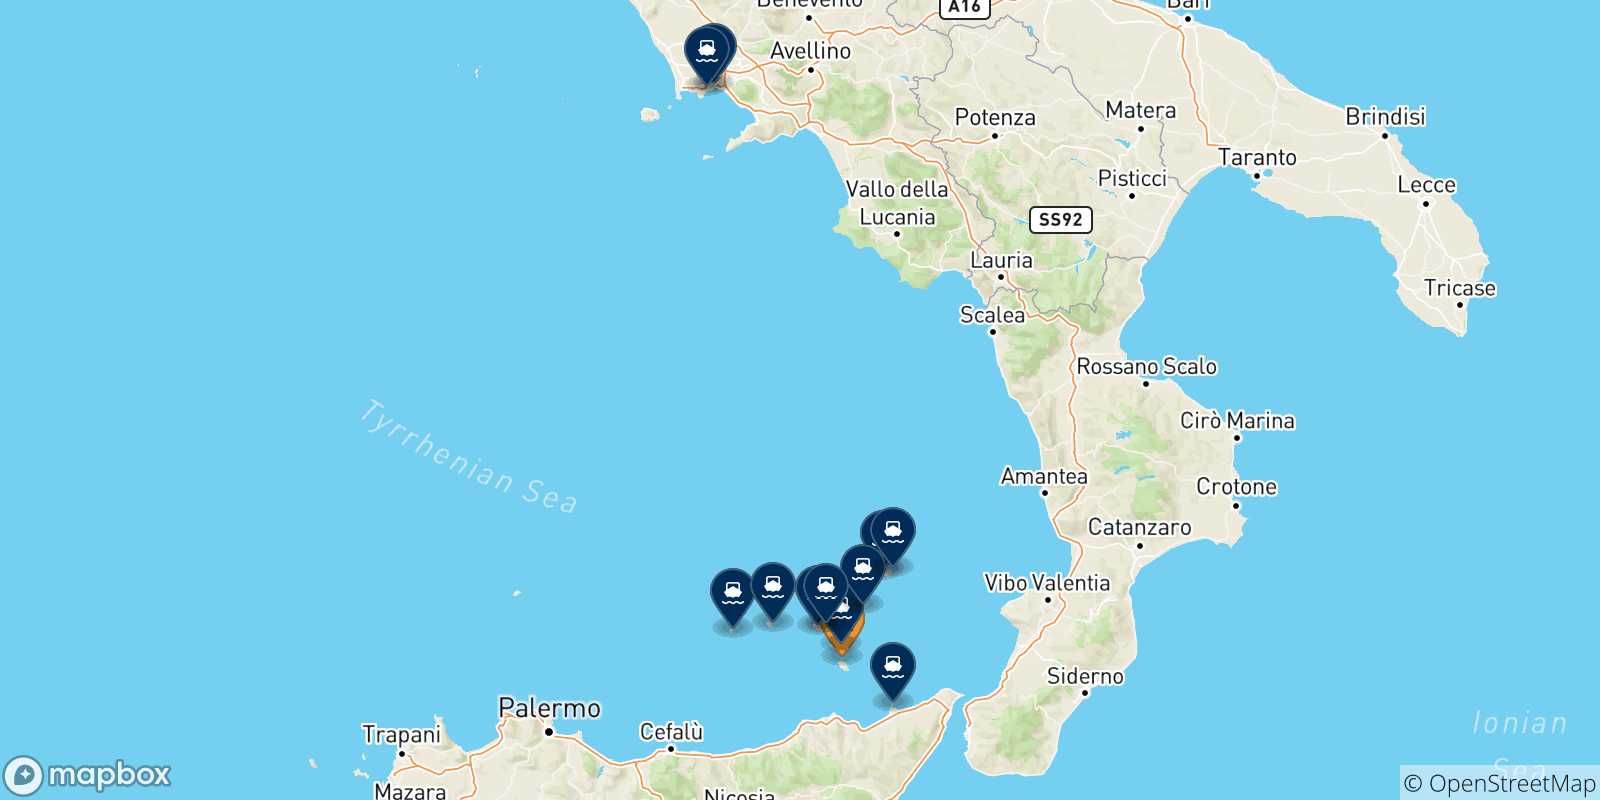 Mappa delle possibili rotte tra Vulcano e l'Italia